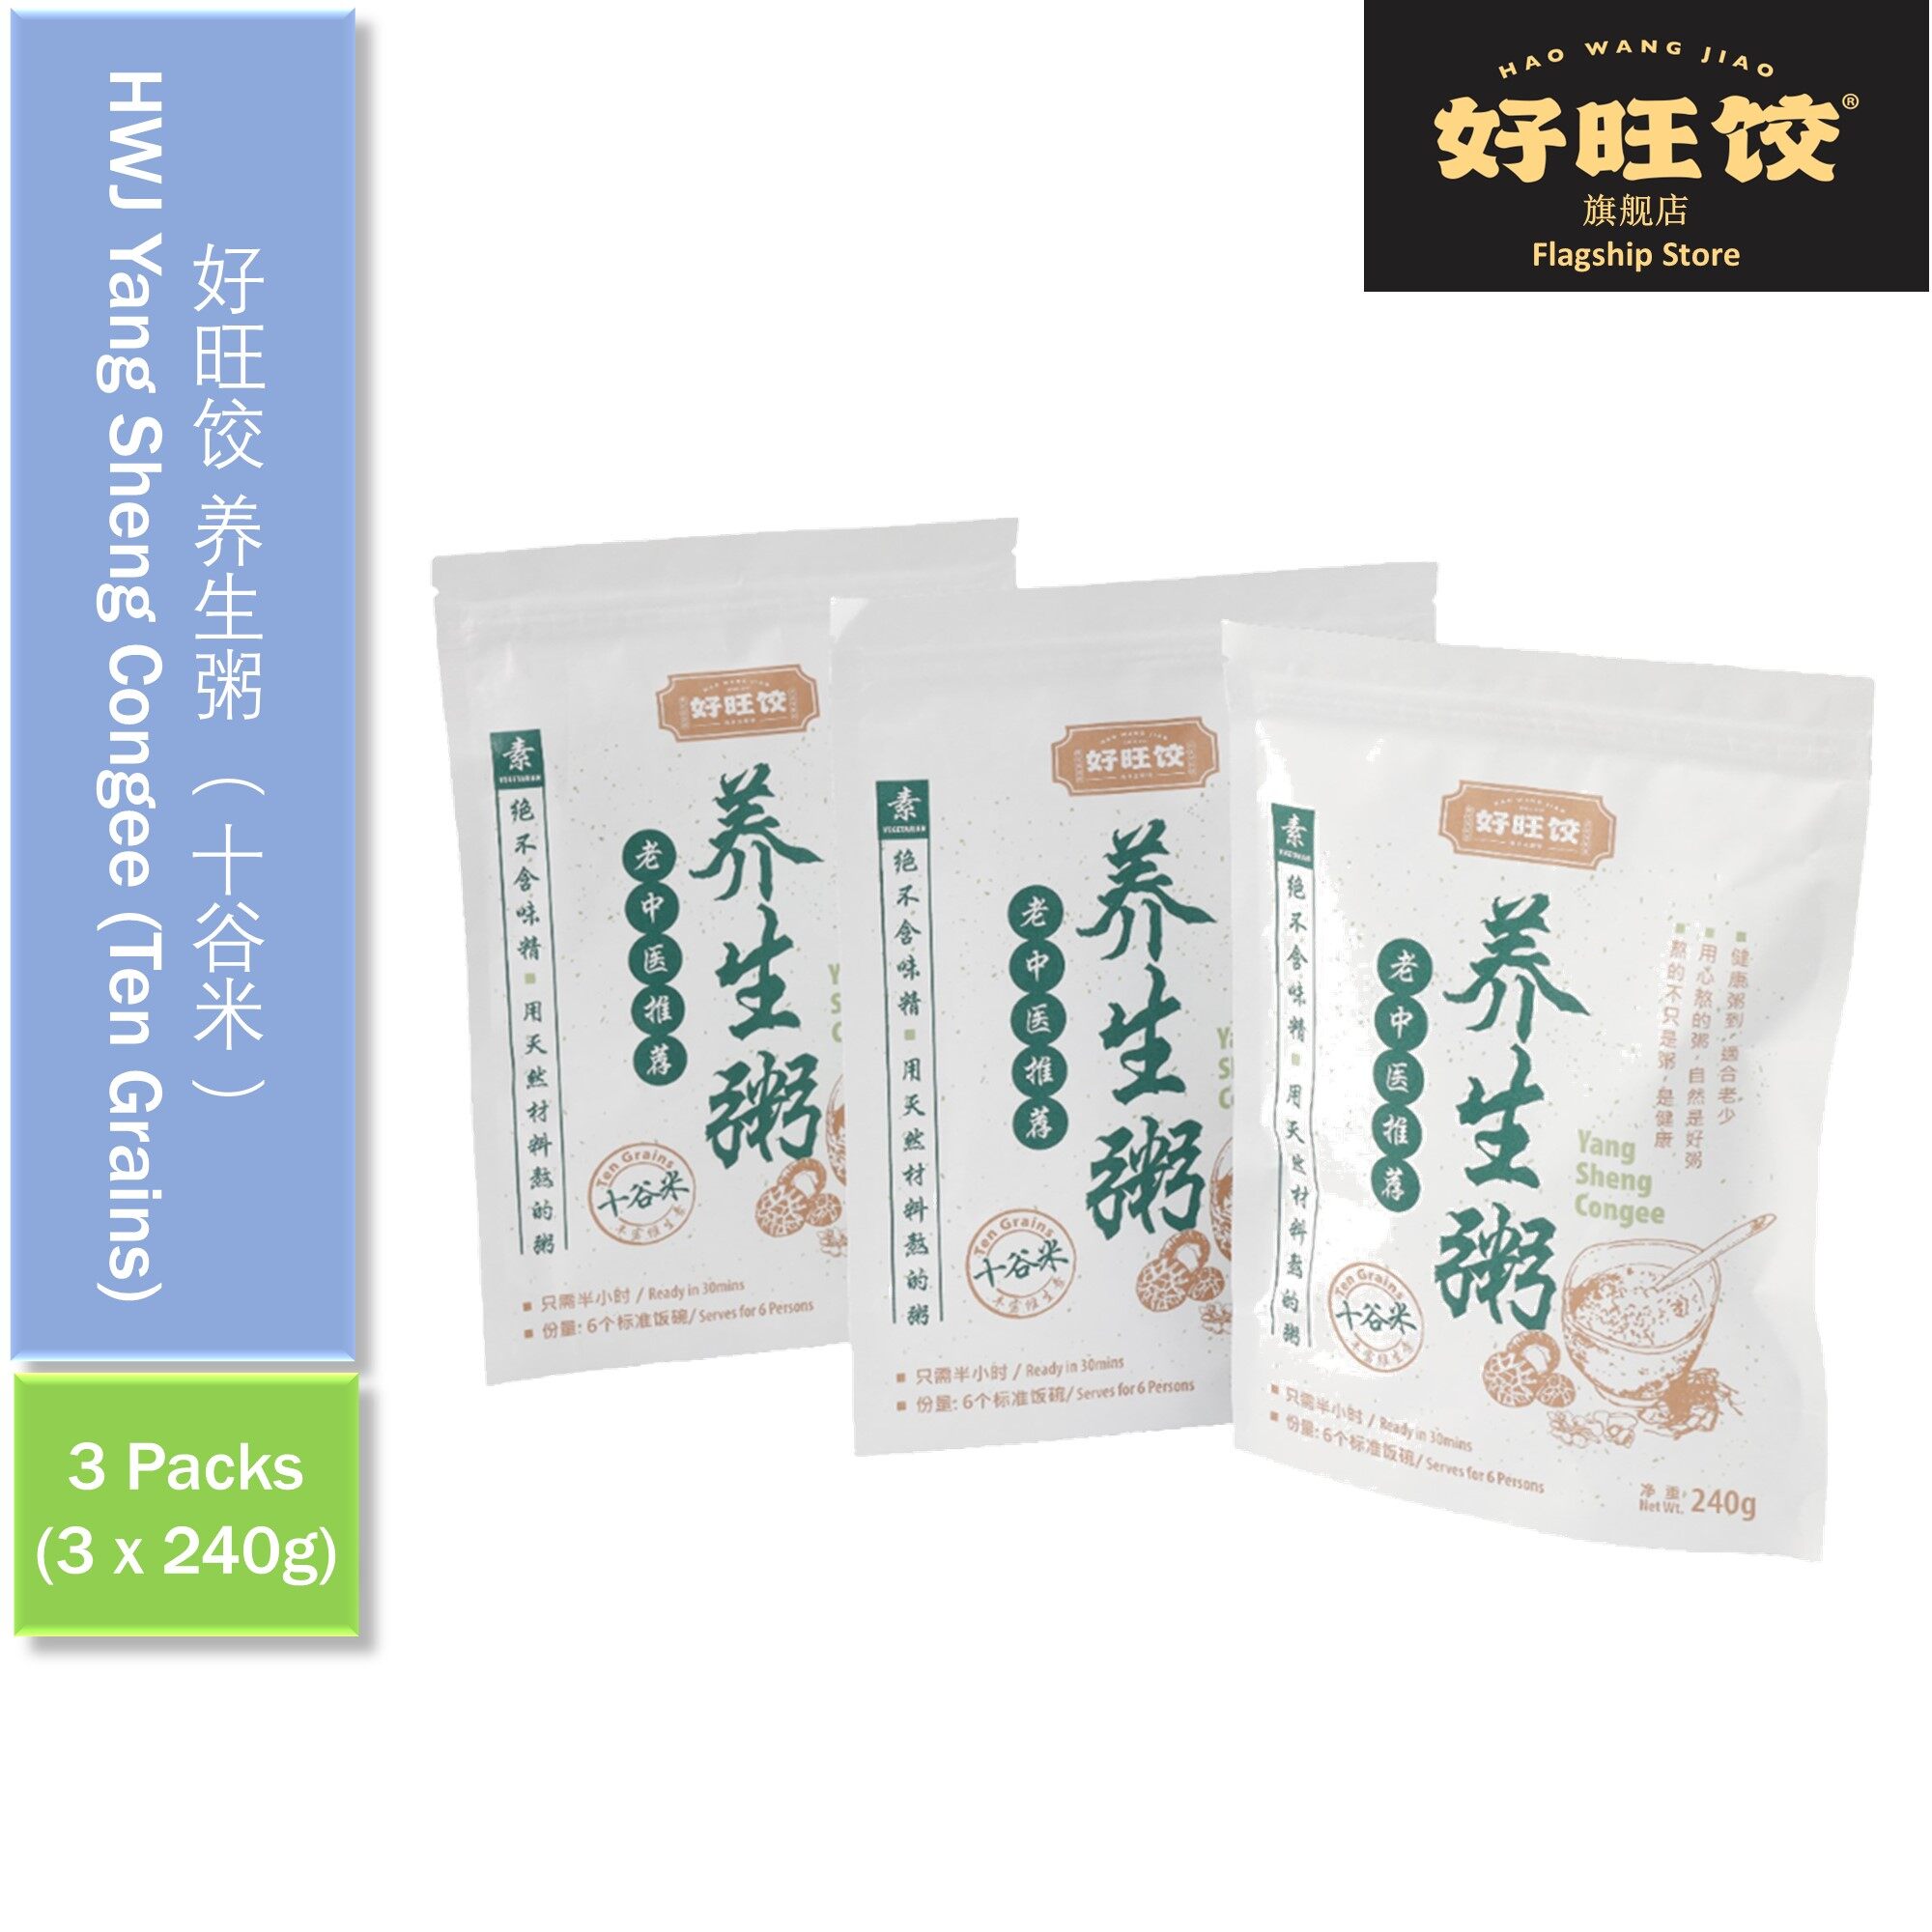 HAO WANG JIAO Yang Sheng Porridge (Ten Grains Rice) - 3packs 好旺饺十谷米养生粥 - 3packs